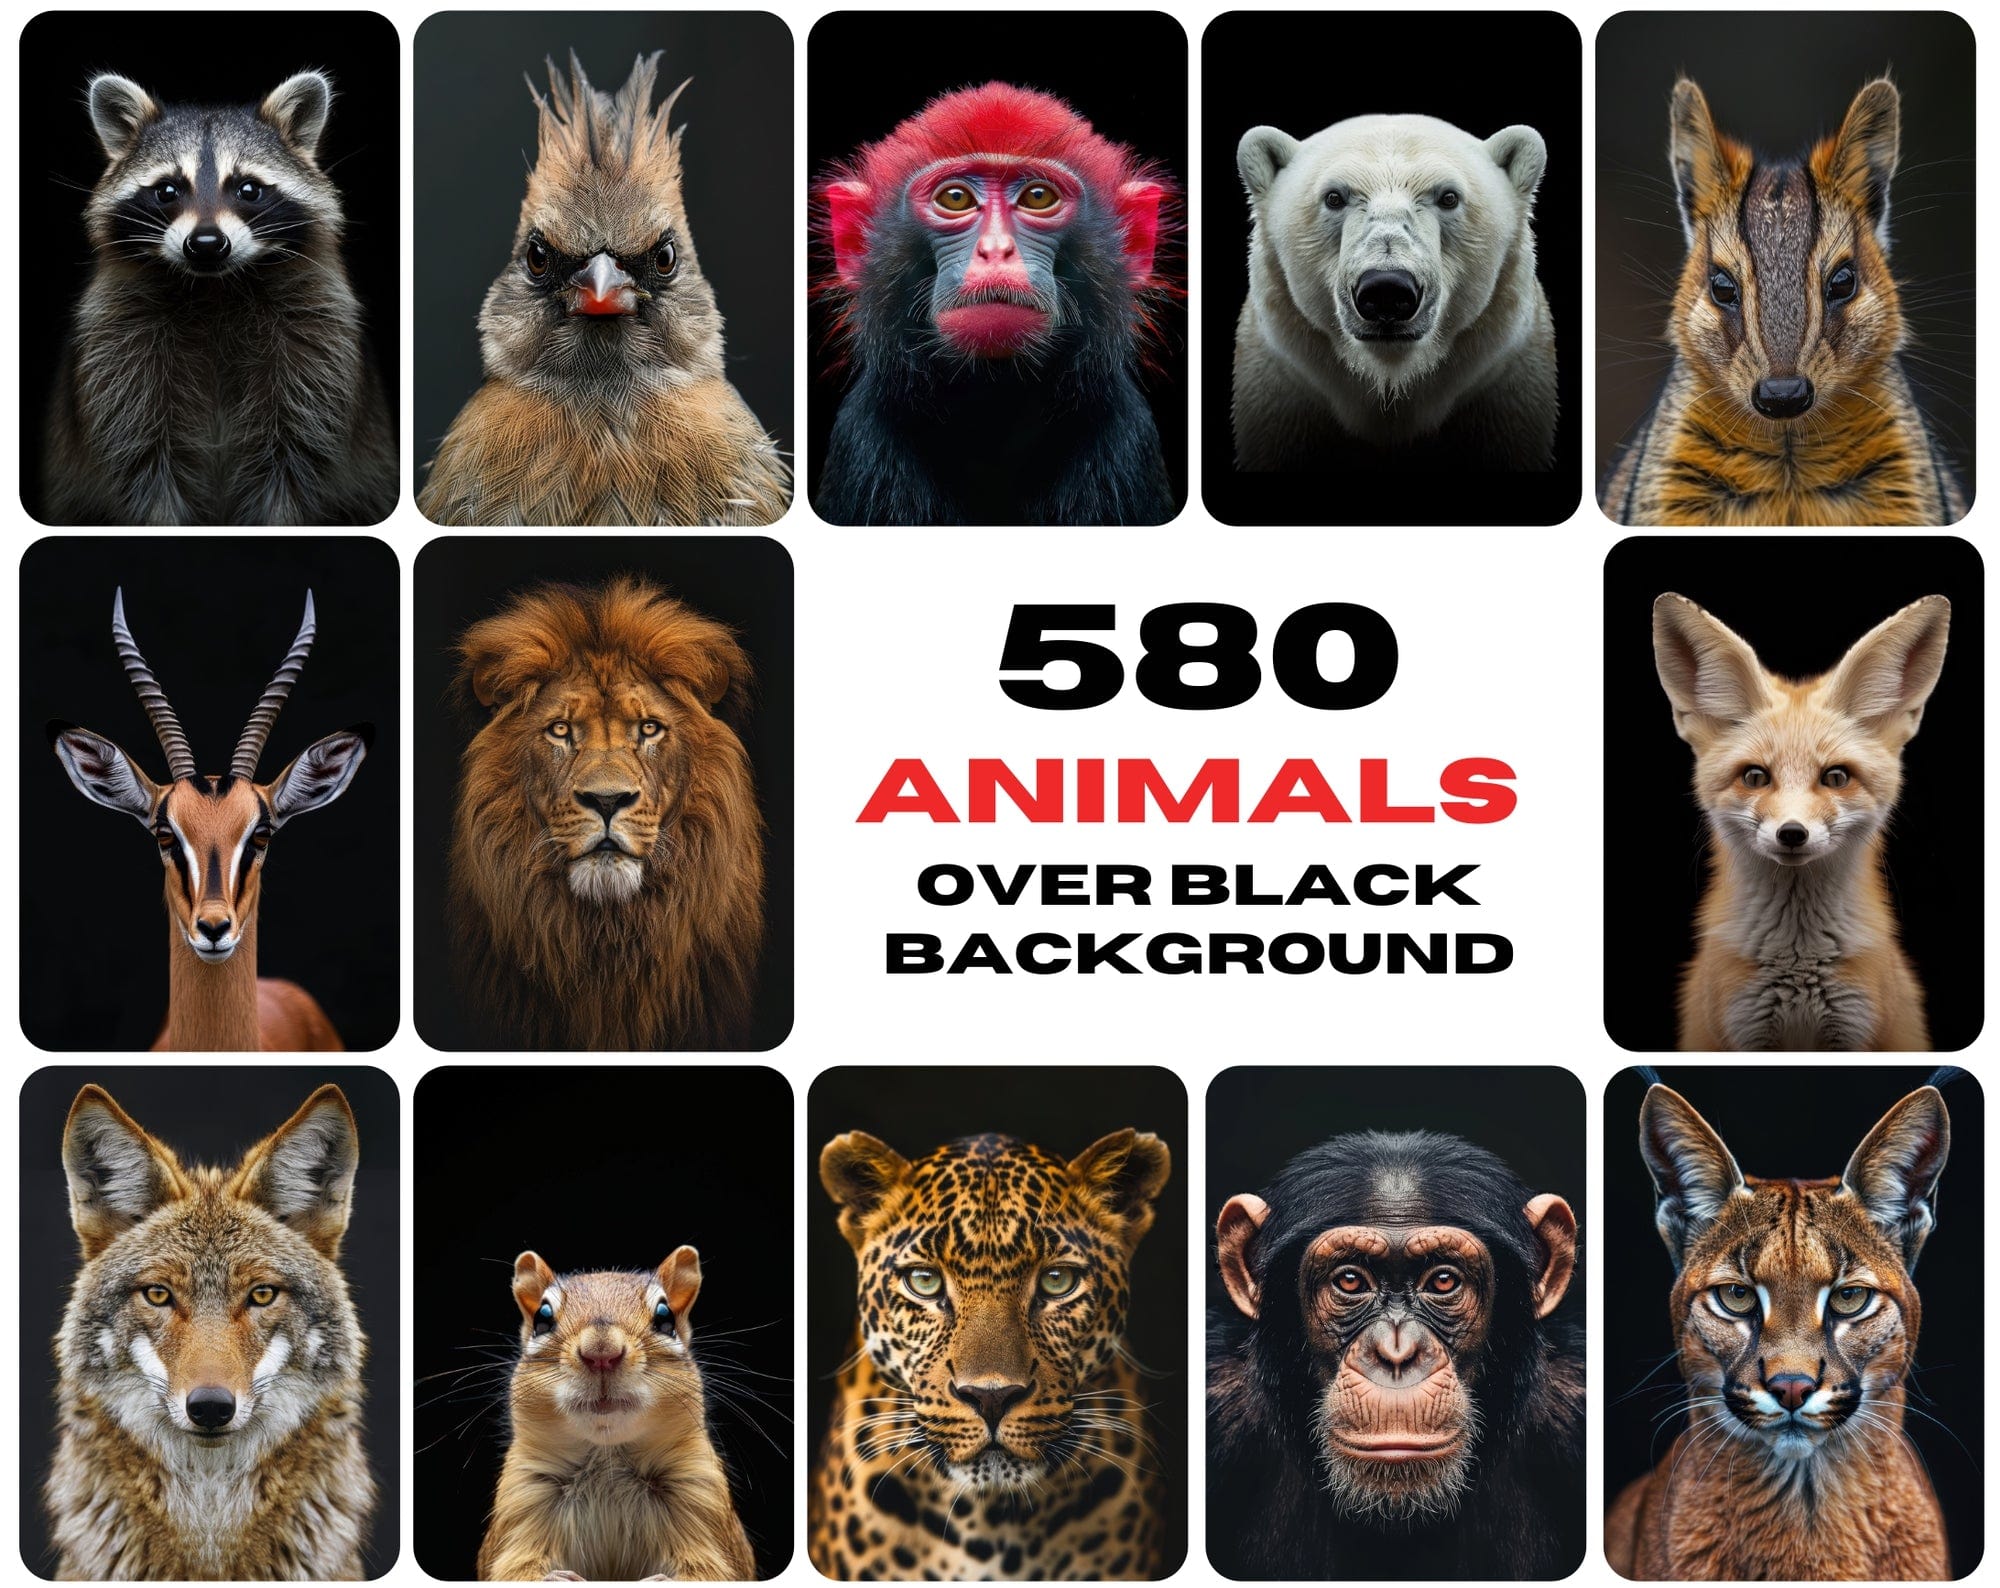 580 Animal Images Over Black Background - Commercial License Included Digital Download Sumobundle